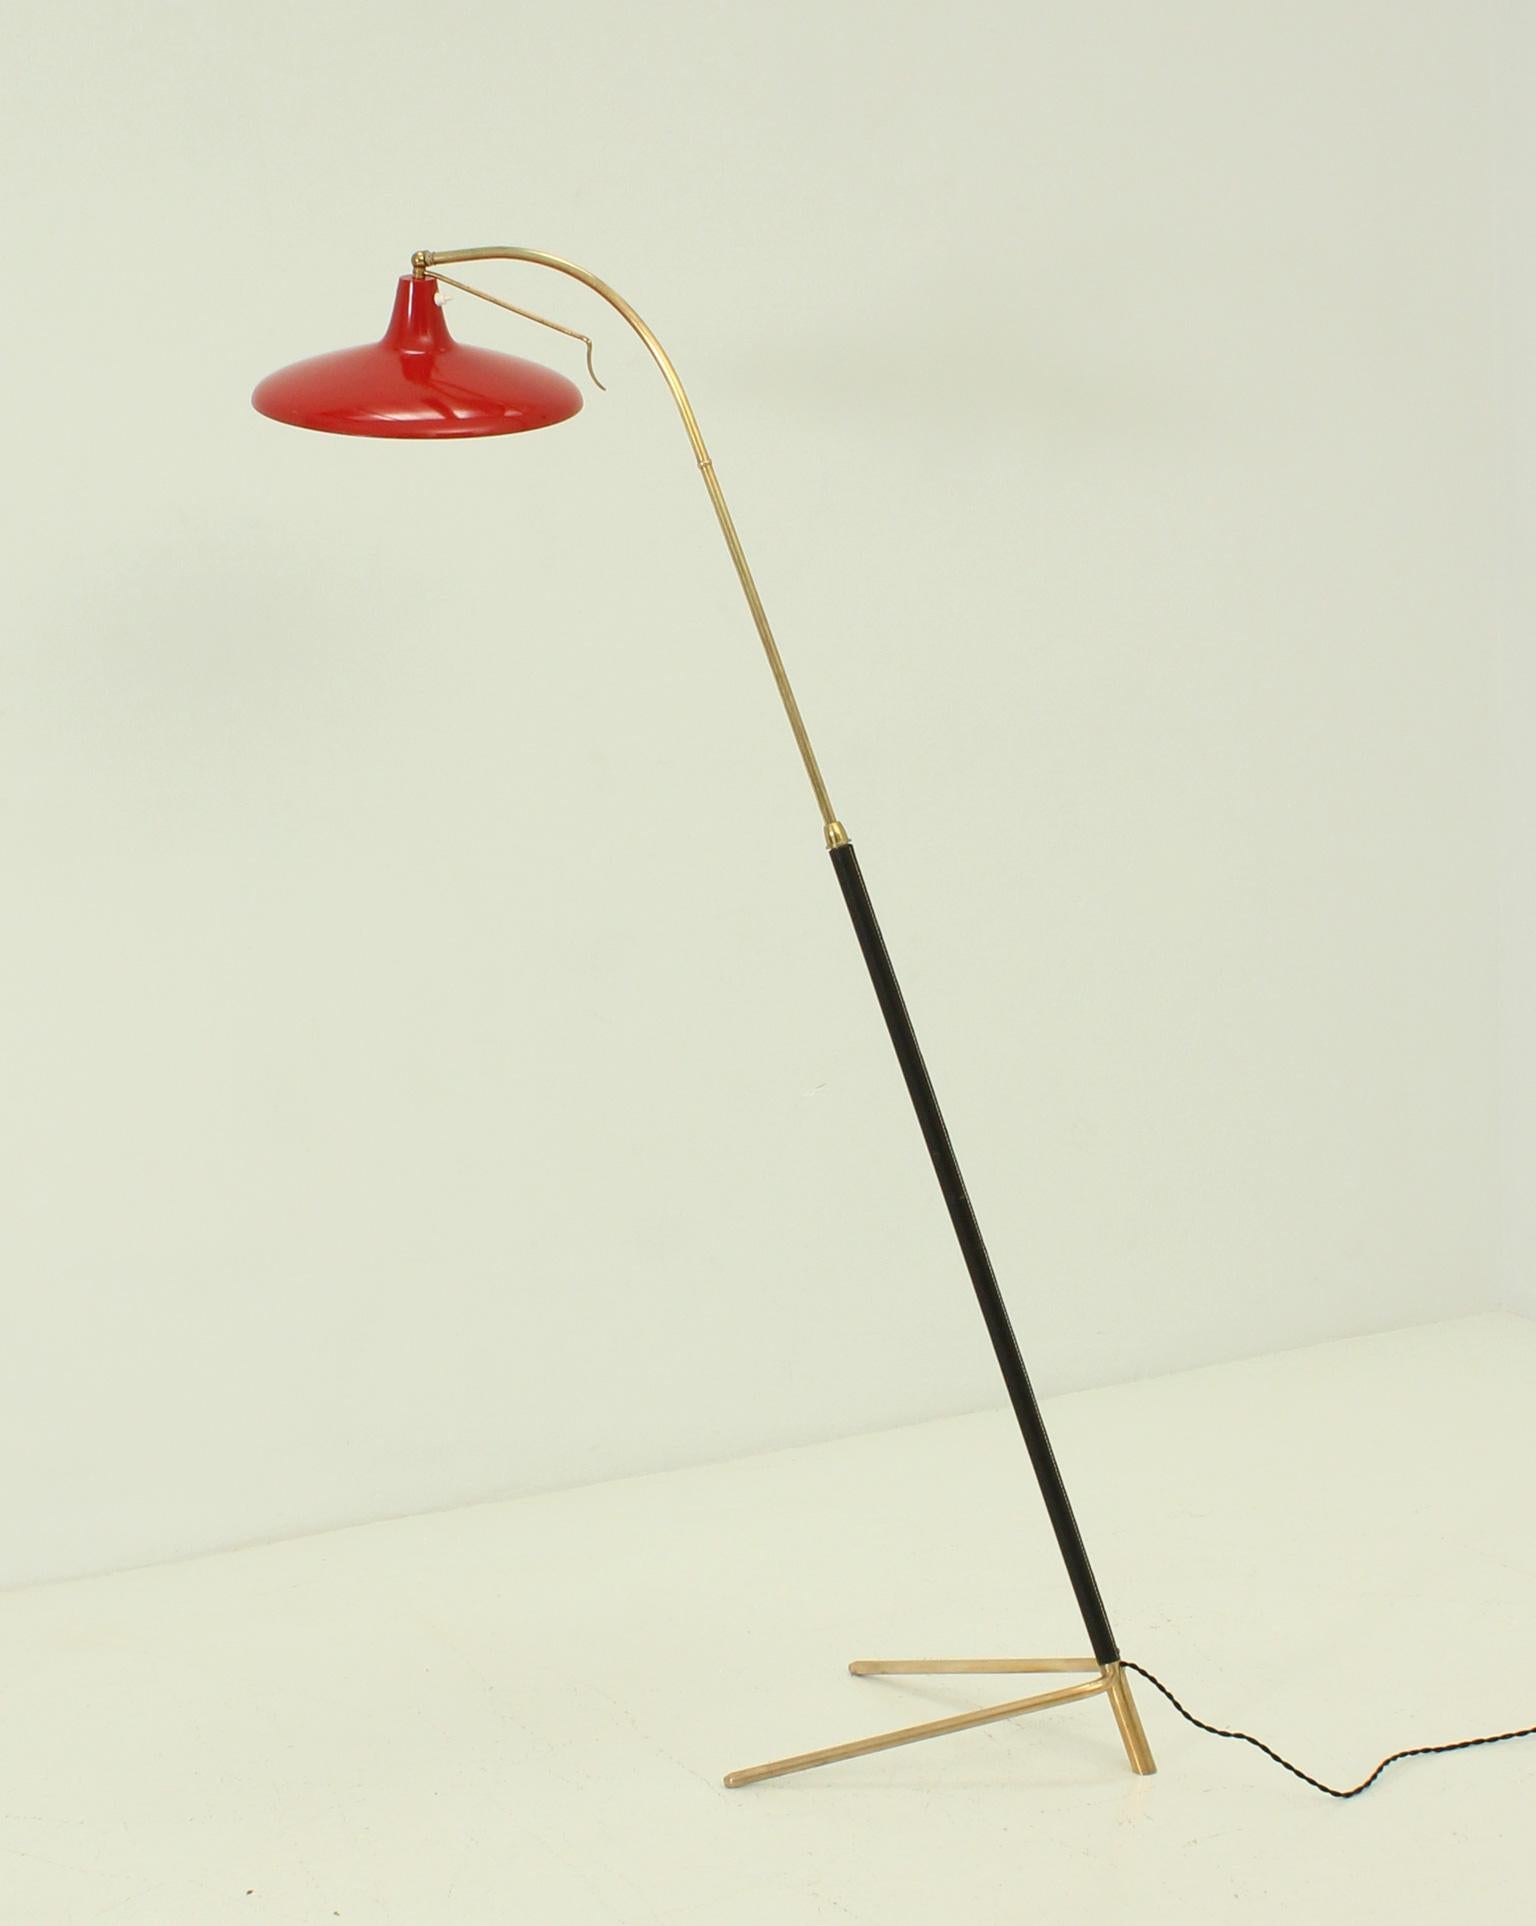 Verstellbare italienische Stehlampe aus den 1950er Jahren. Schirm aus rot emailliertem Metall mit beweglicher Kniescheibe zur Einstellung verschiedener Positionen, Gestell aus Messing und schwarzem Leder, höhenverstellbar von 152 bis 182 cm.